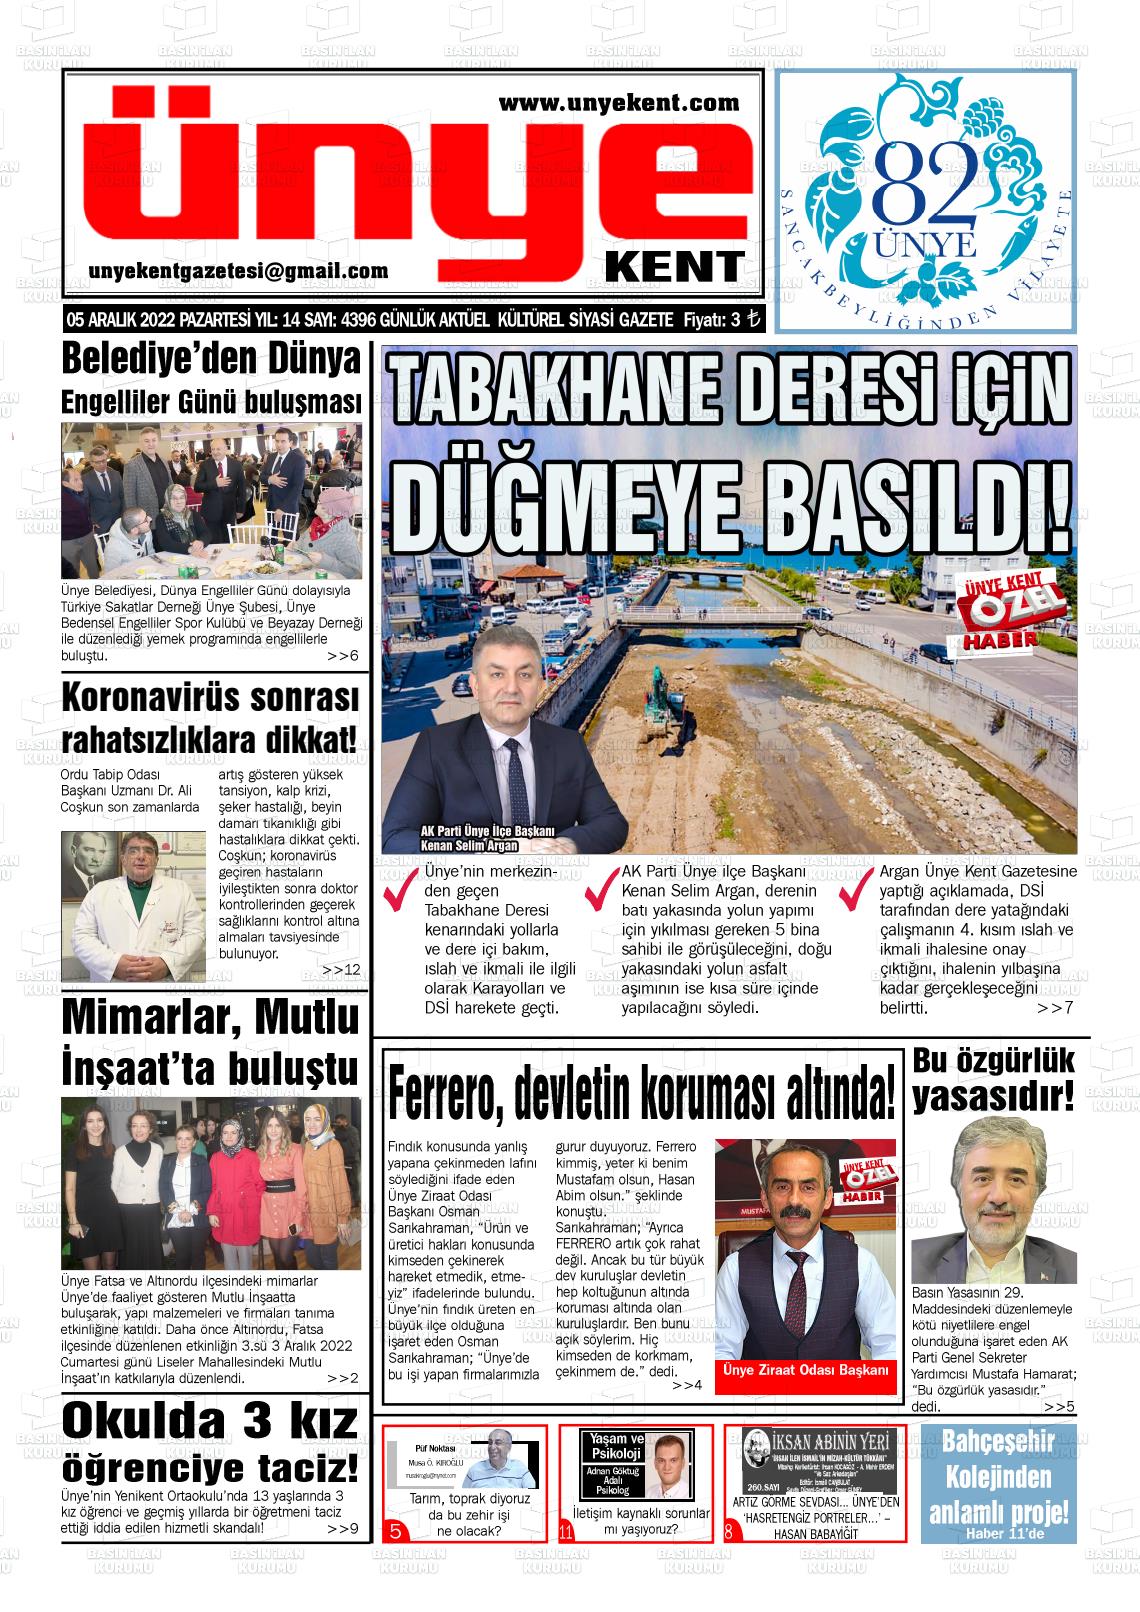 05 Aralık 2022 Ünye Kent Gazete Manşeti